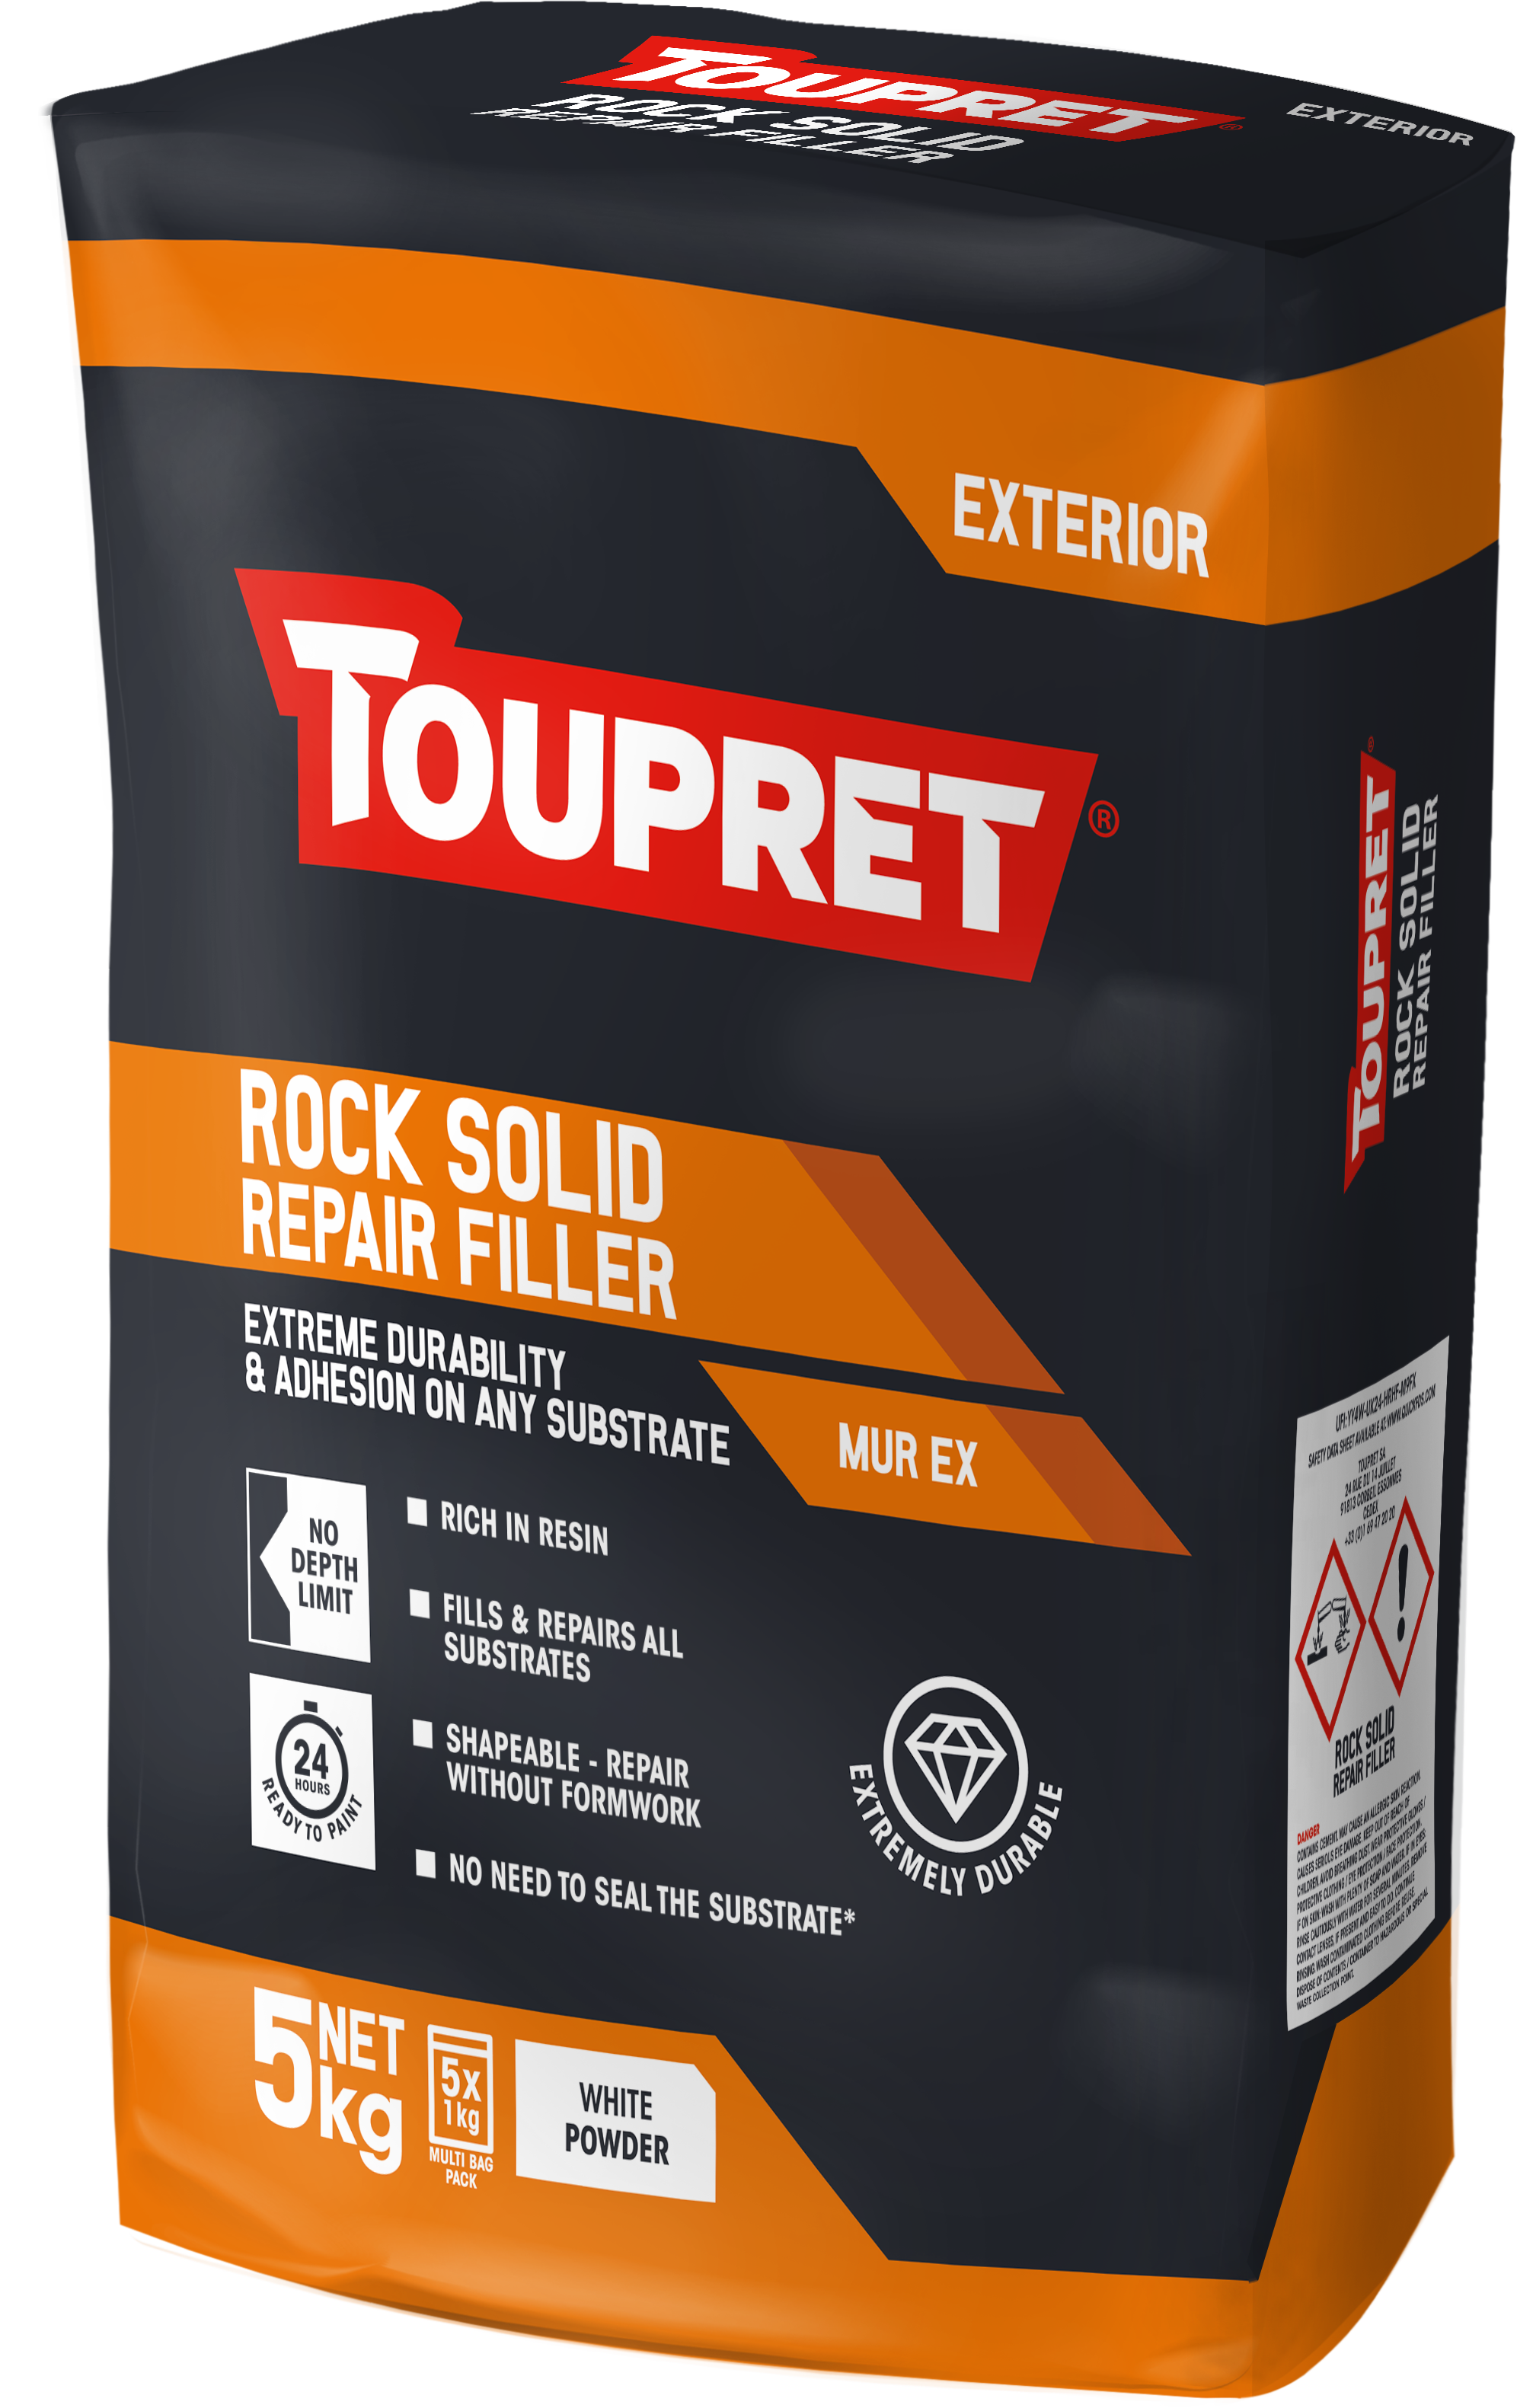 Toupret Rock Solid Repair Filler (Murex) 5x 1kg bag in bag